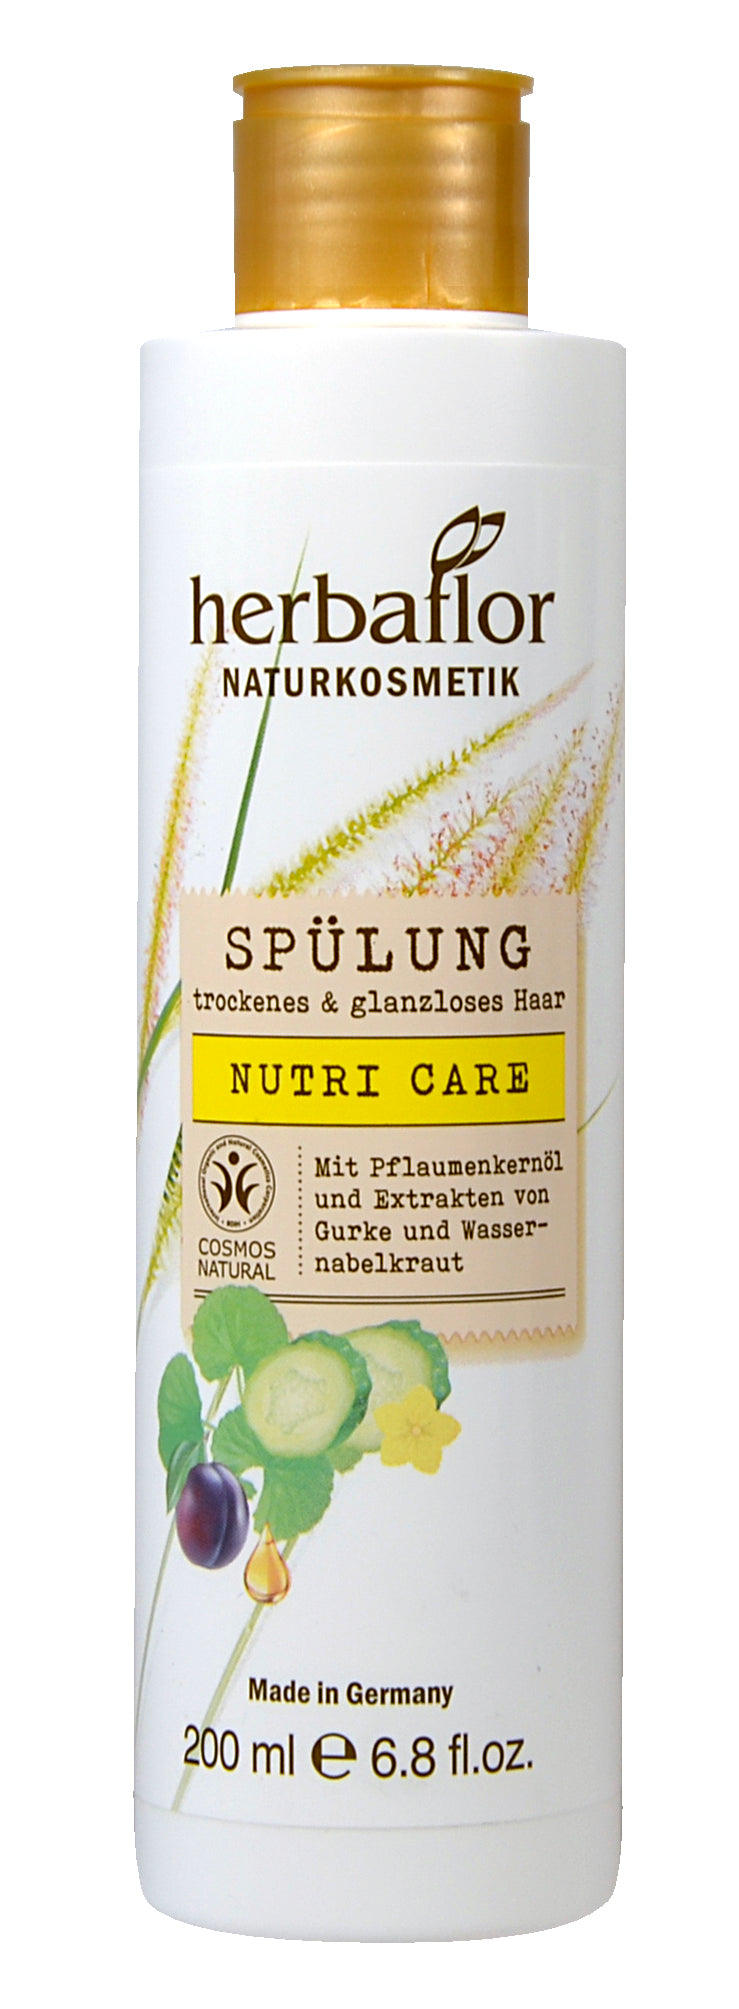 Nutri Care après-shampooing cosmétique naturelle 200 ml